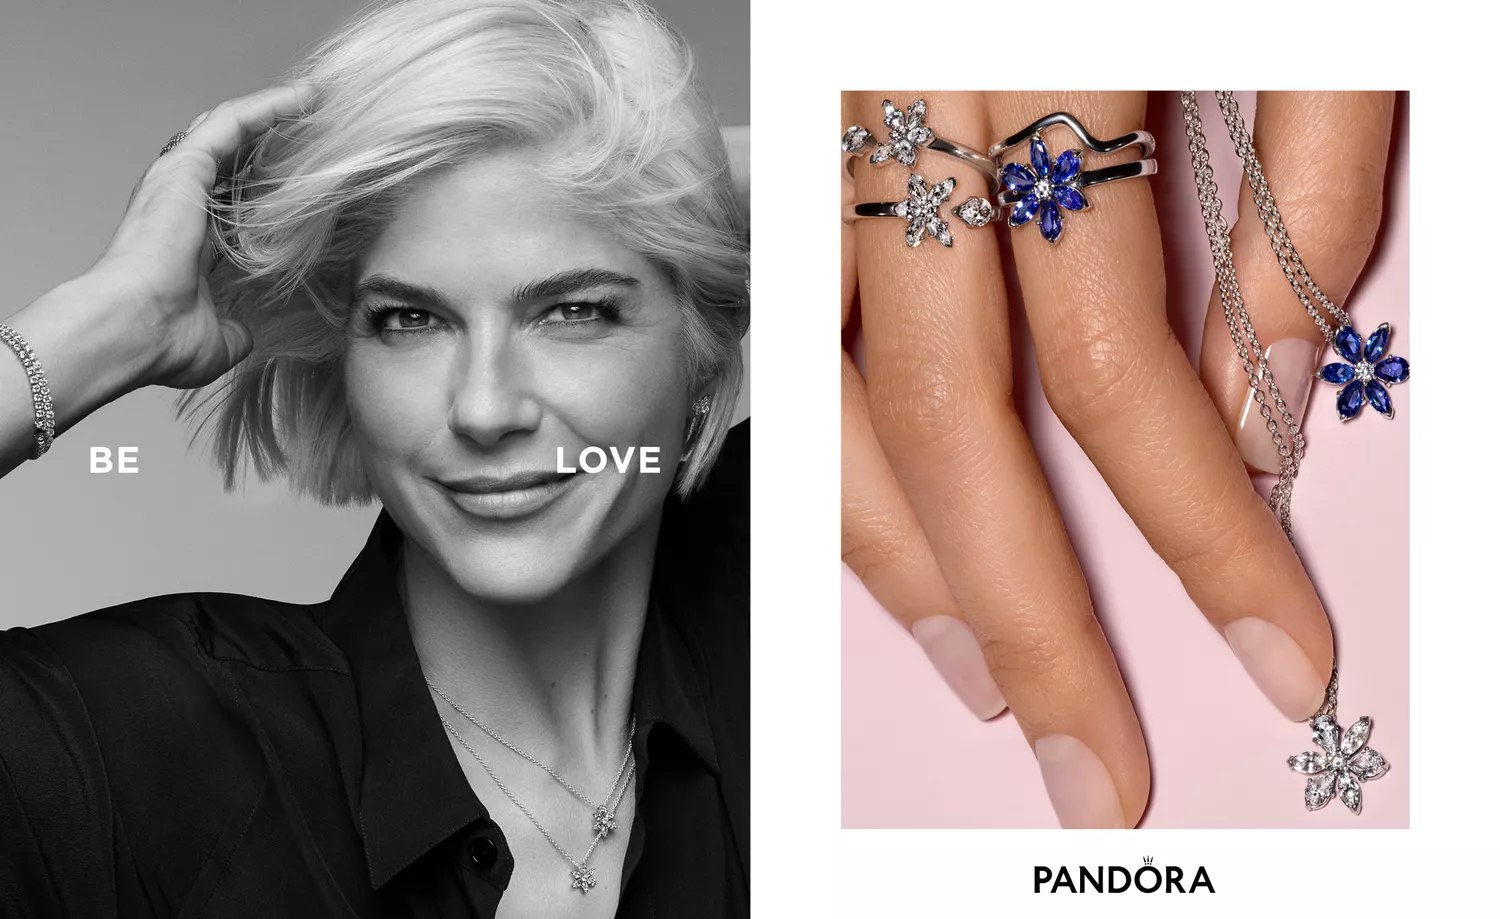 Pandora представил новую рекламную кампанию с сестрами Бэйли и Сельмой Блэр (фото 3)